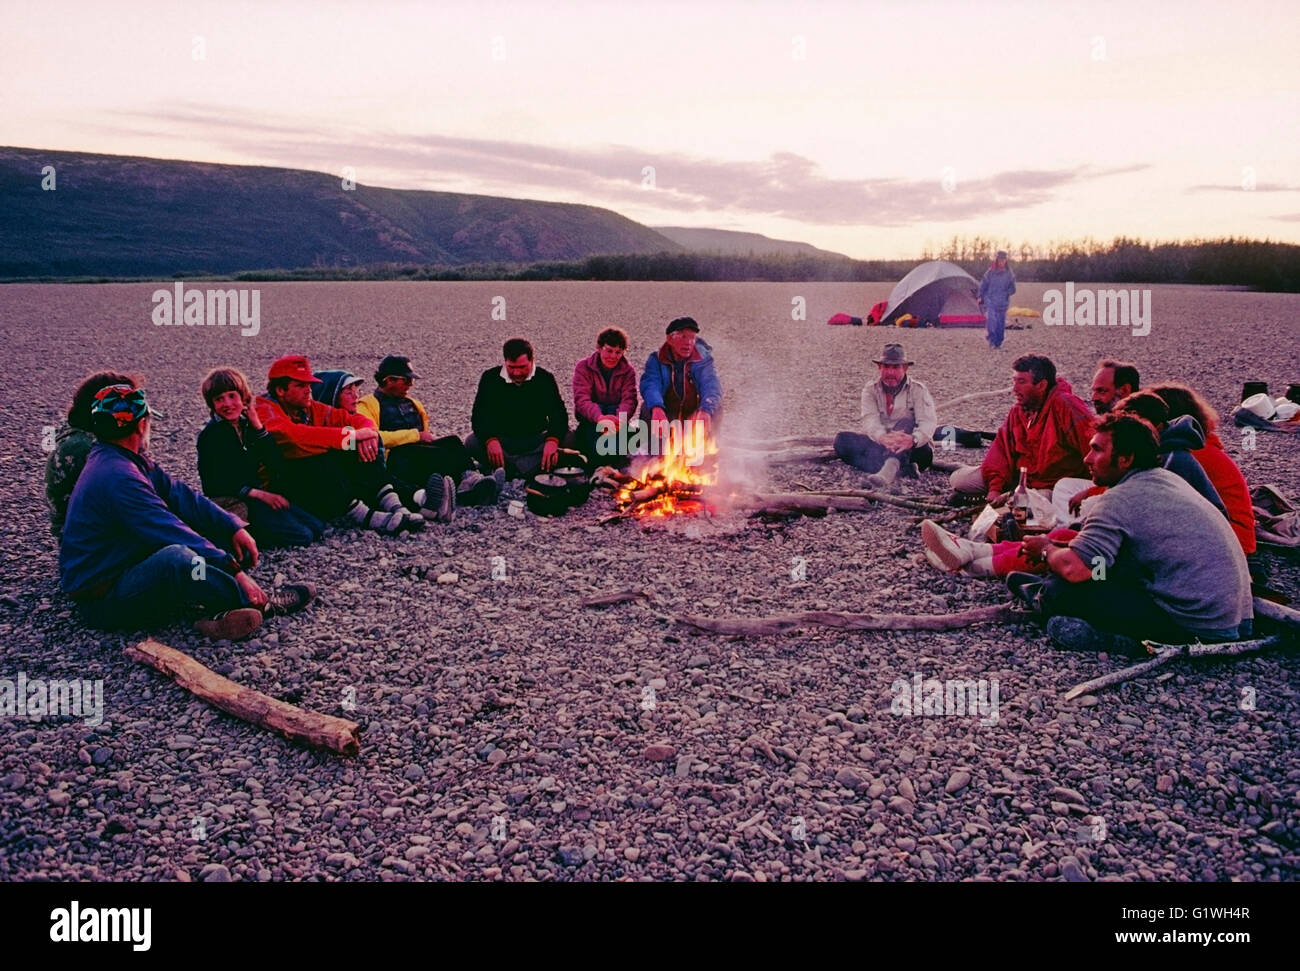 Les voyageurs d'aventure américaine avec guides soviétique s'asseoir autour d'un feu de camp, Belaya River, Magadon Région, Sibérie, frmr Union Soviétique Banque D'Images